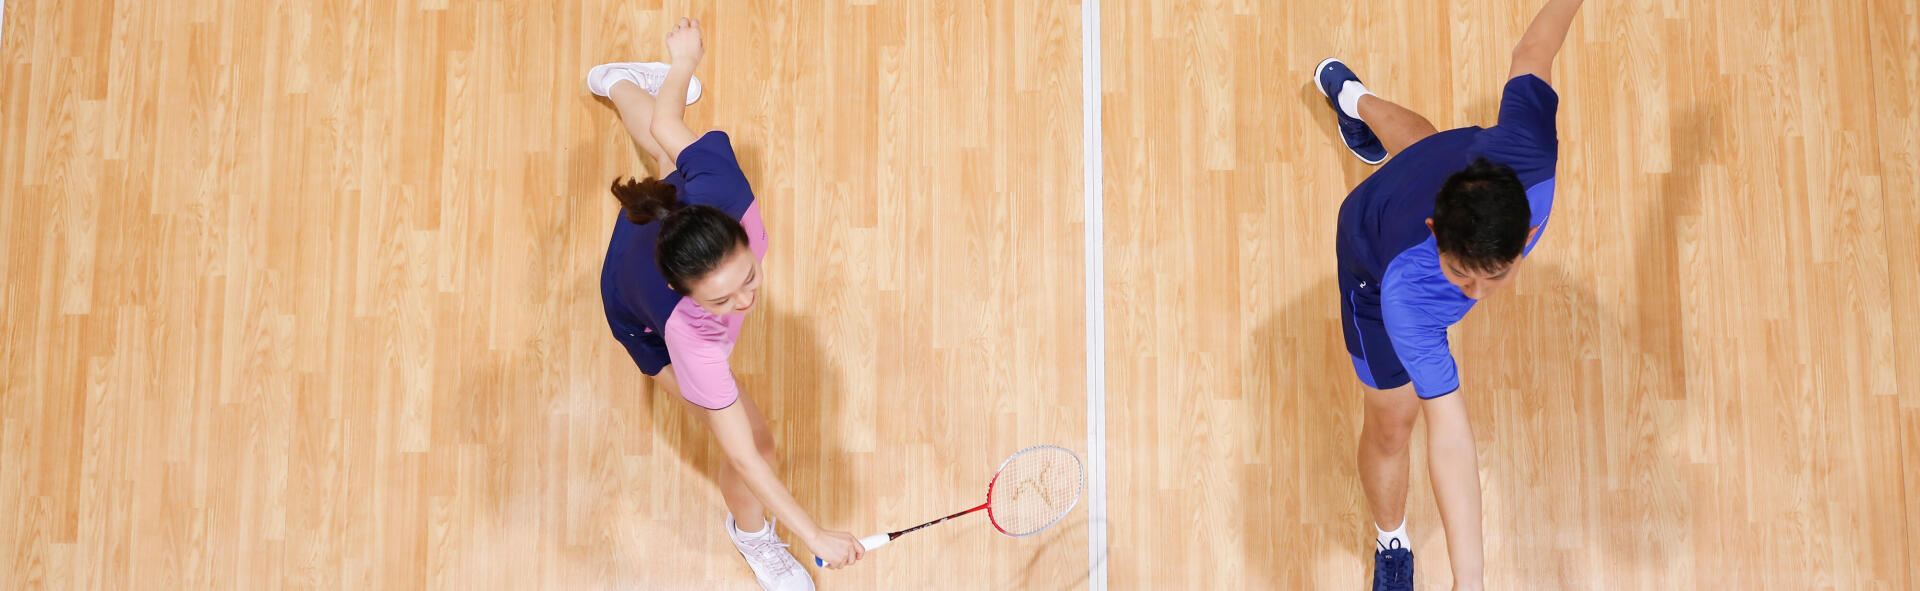 Comment mettre un surgrip sur une raquette de badminton ? 